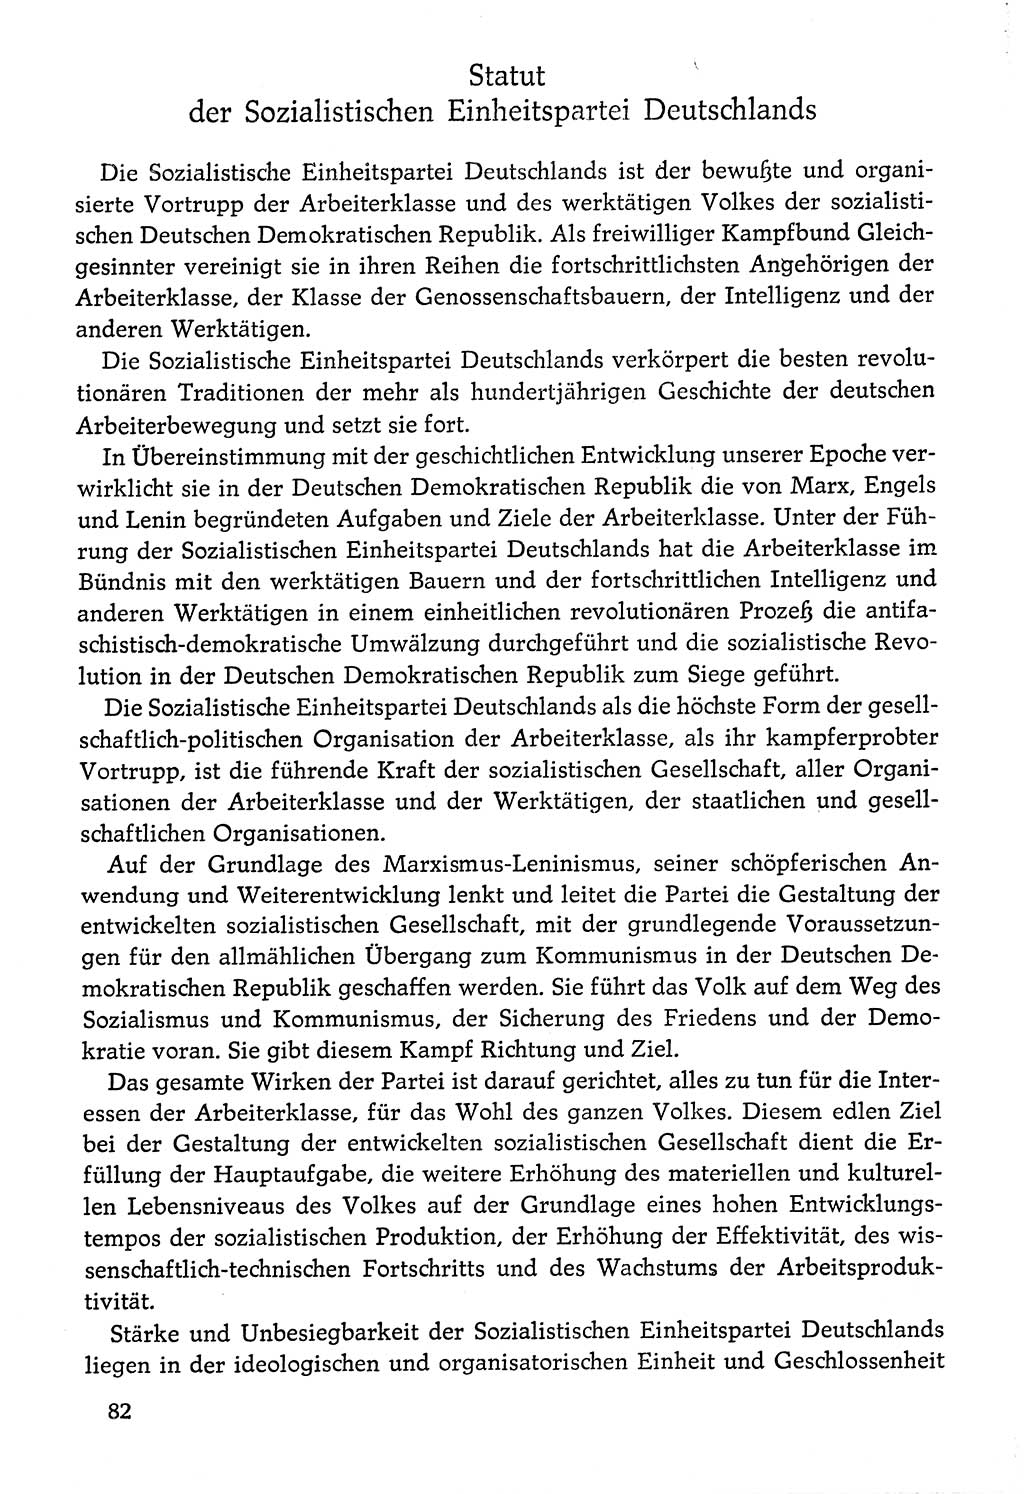 Dokumente der Sozialistischen Einheitspartei Deutschlands (SED) [Deutsche Demokratische Republik (DDR)] 1976-1977, Seite 82 (Dok. SED DDR 1976-1977, S. 82)